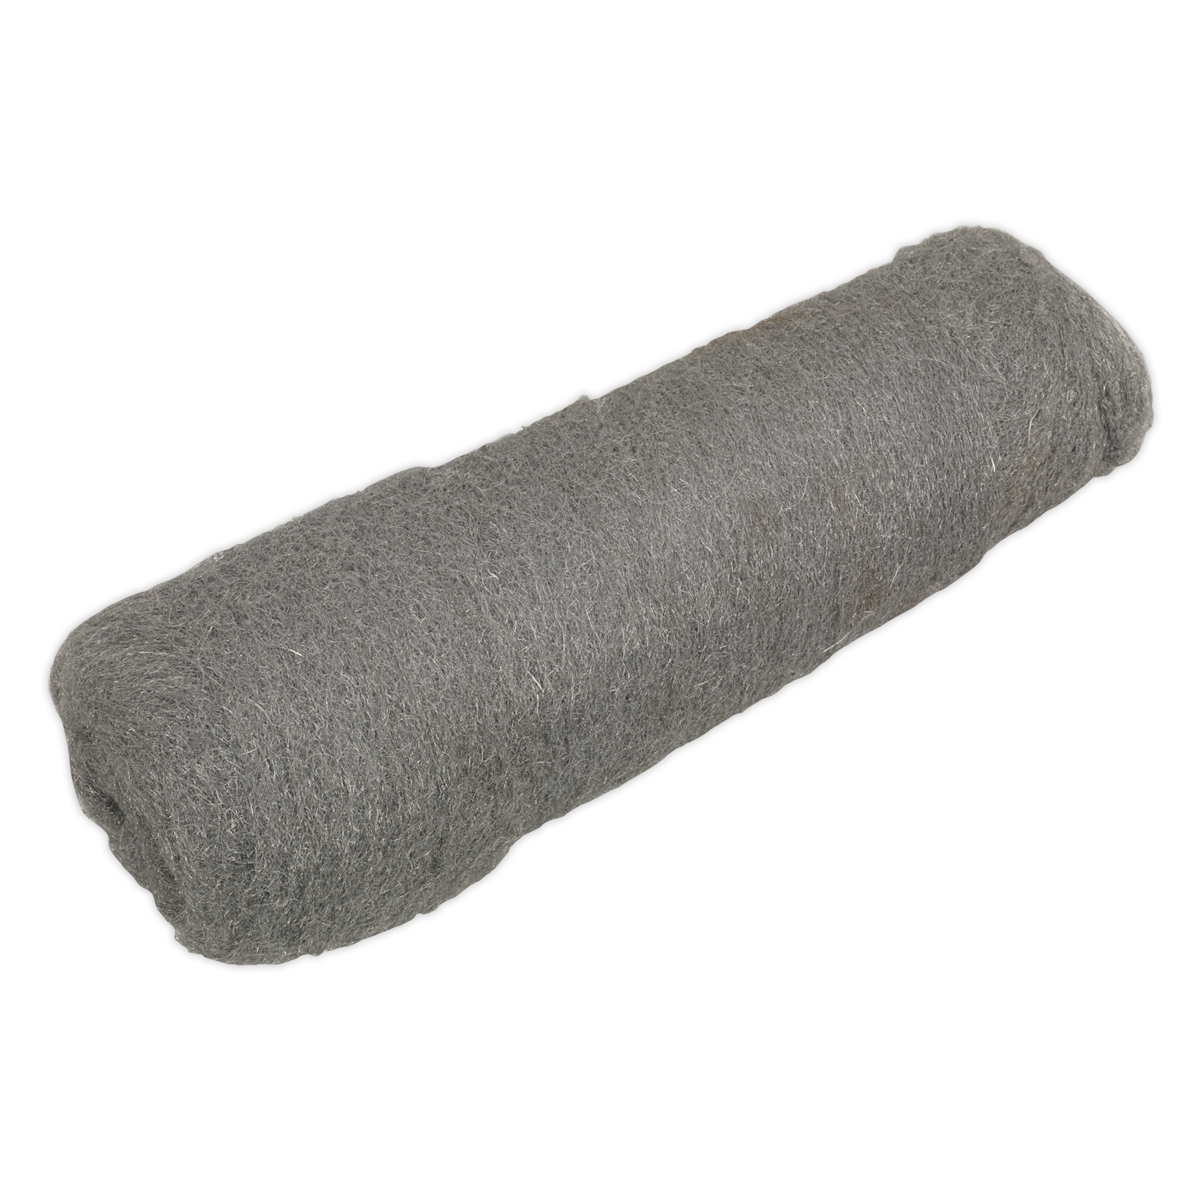 Sealey Steel Wool #00 Extra Fine Grade 450g